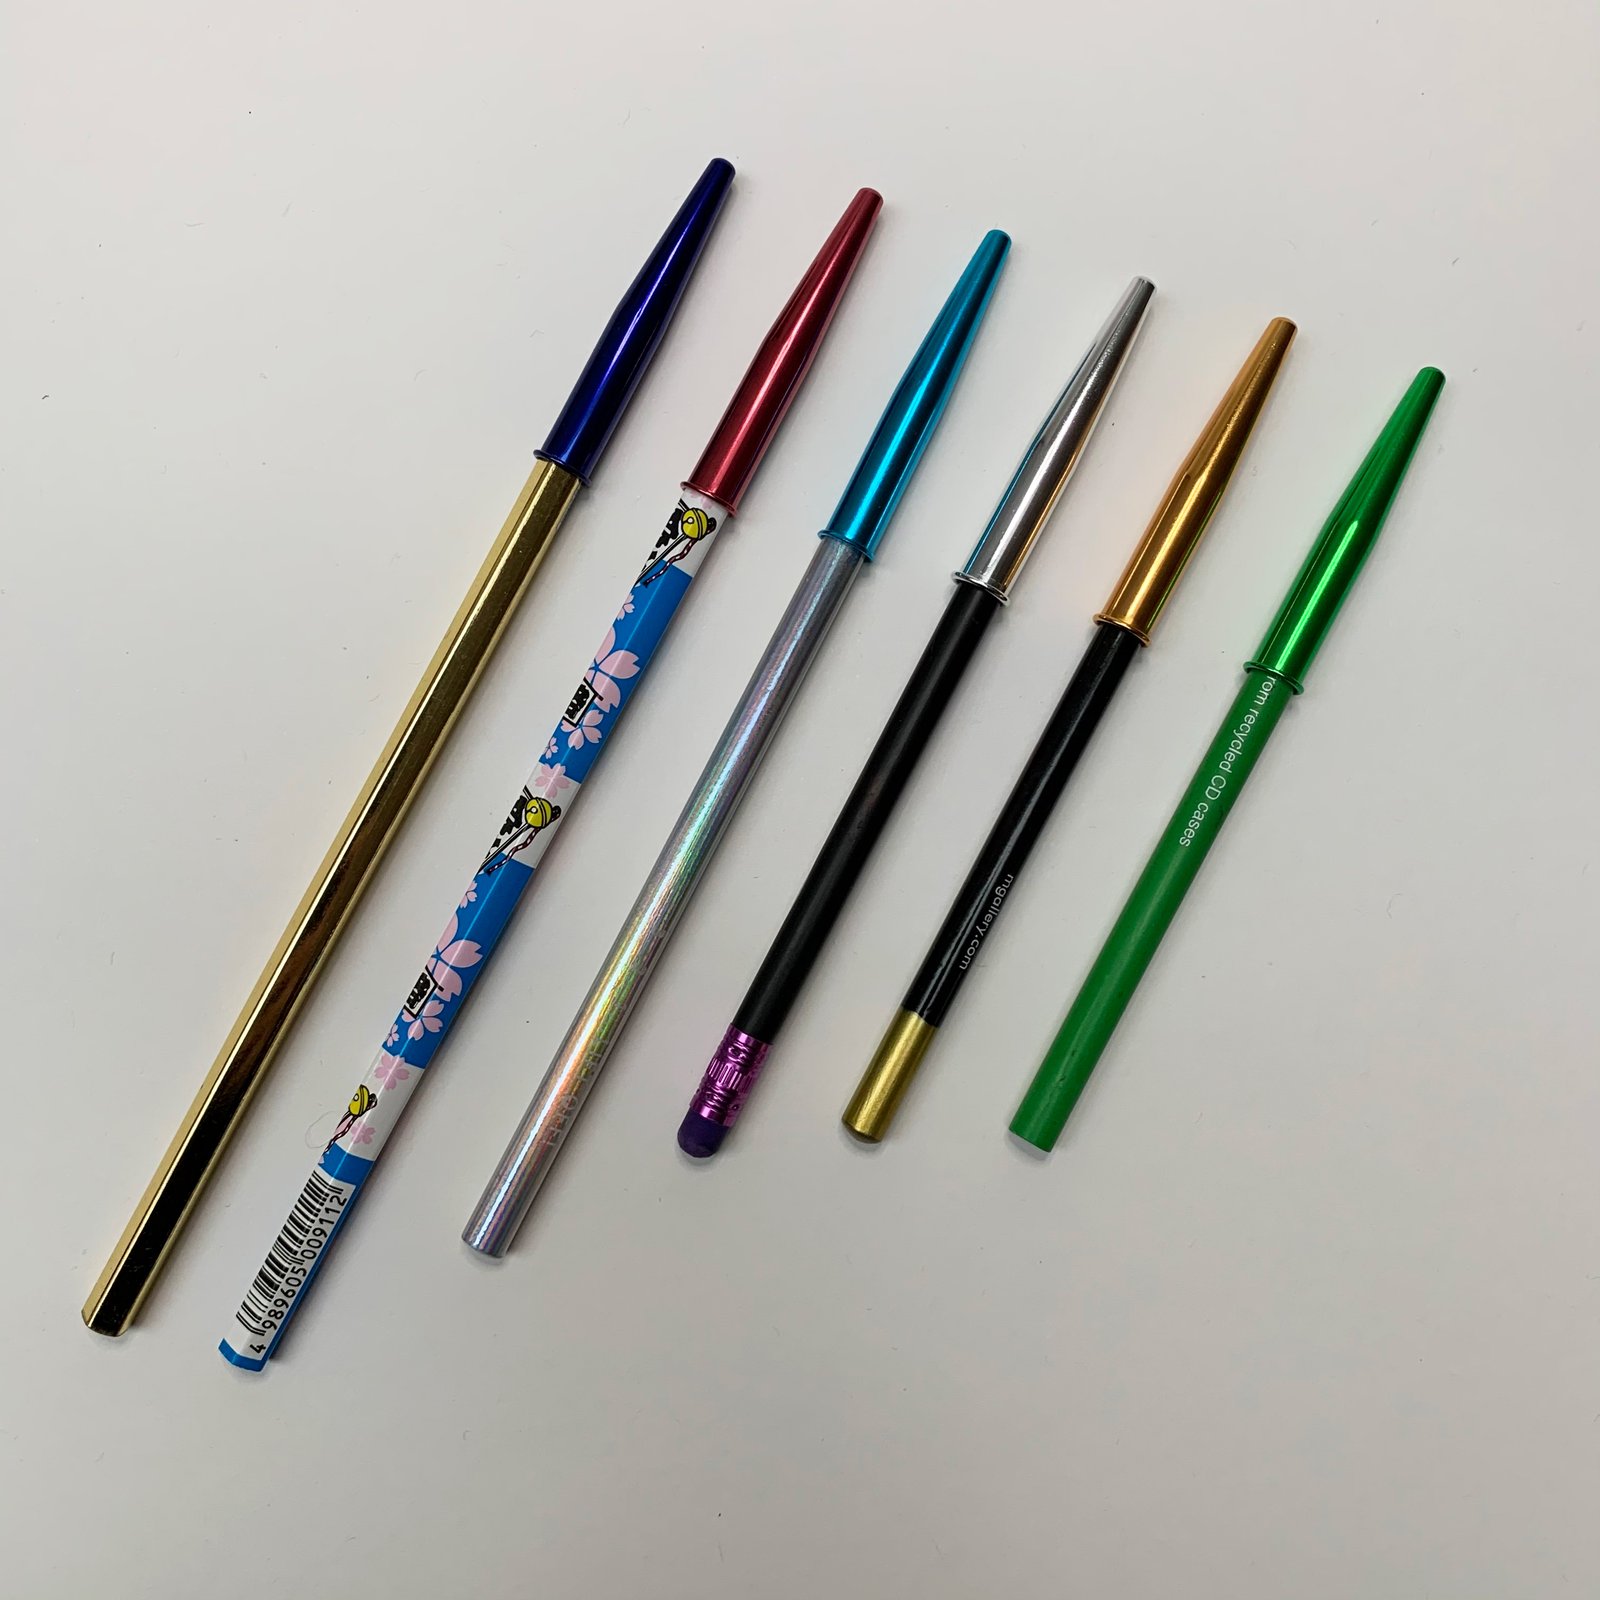 Kutsuwa Japan STAD Metal Pencil Cap Multi Colors 6-Cap RB016 